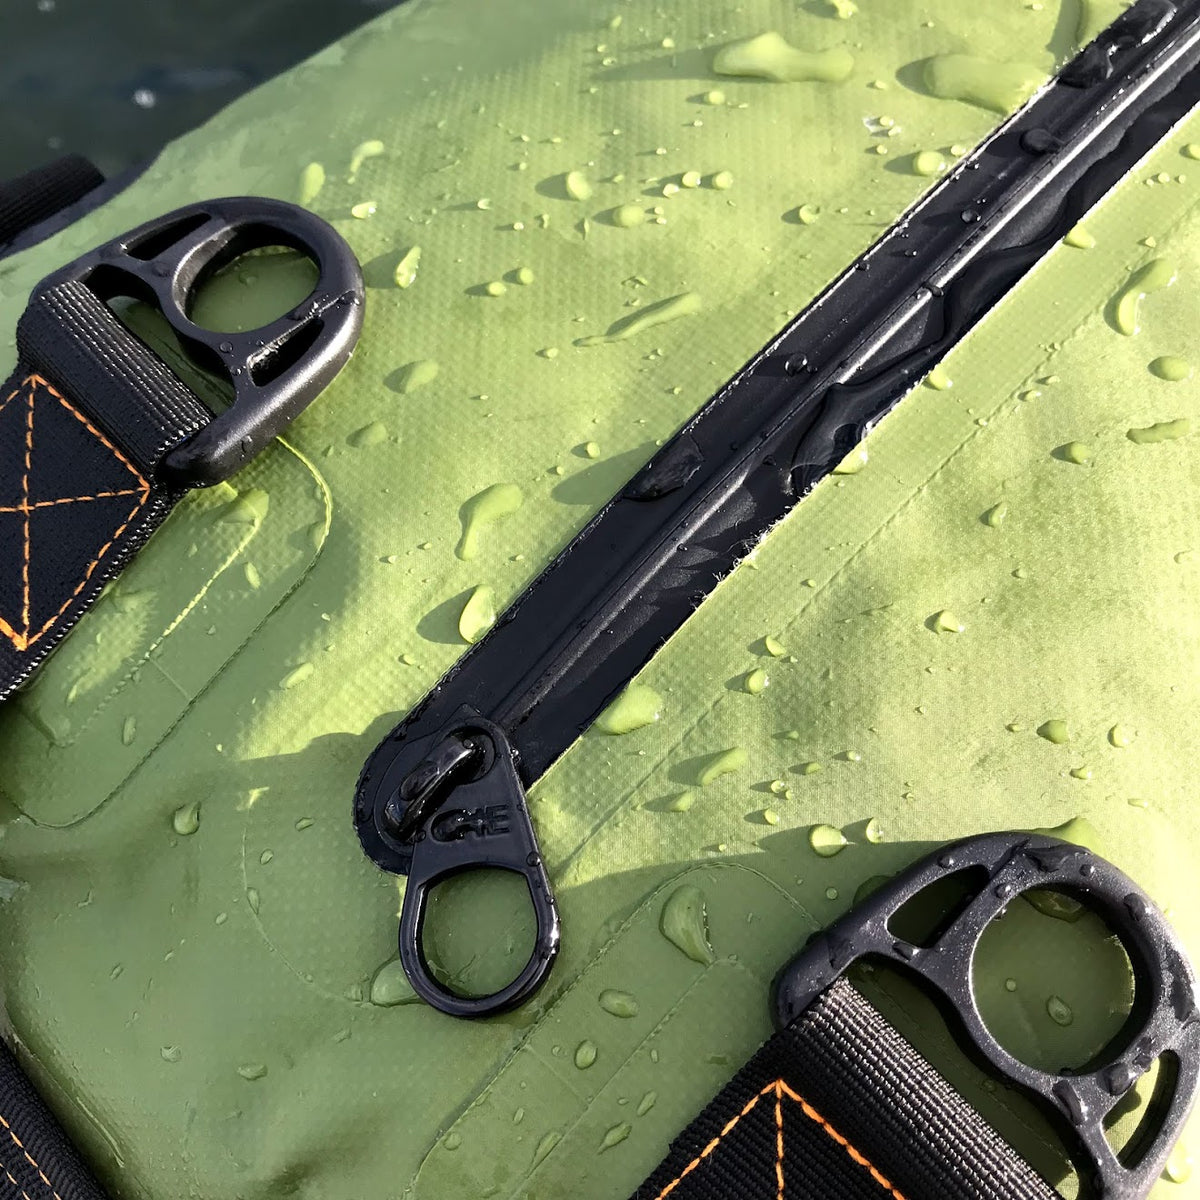 100% Waterproof camping bags